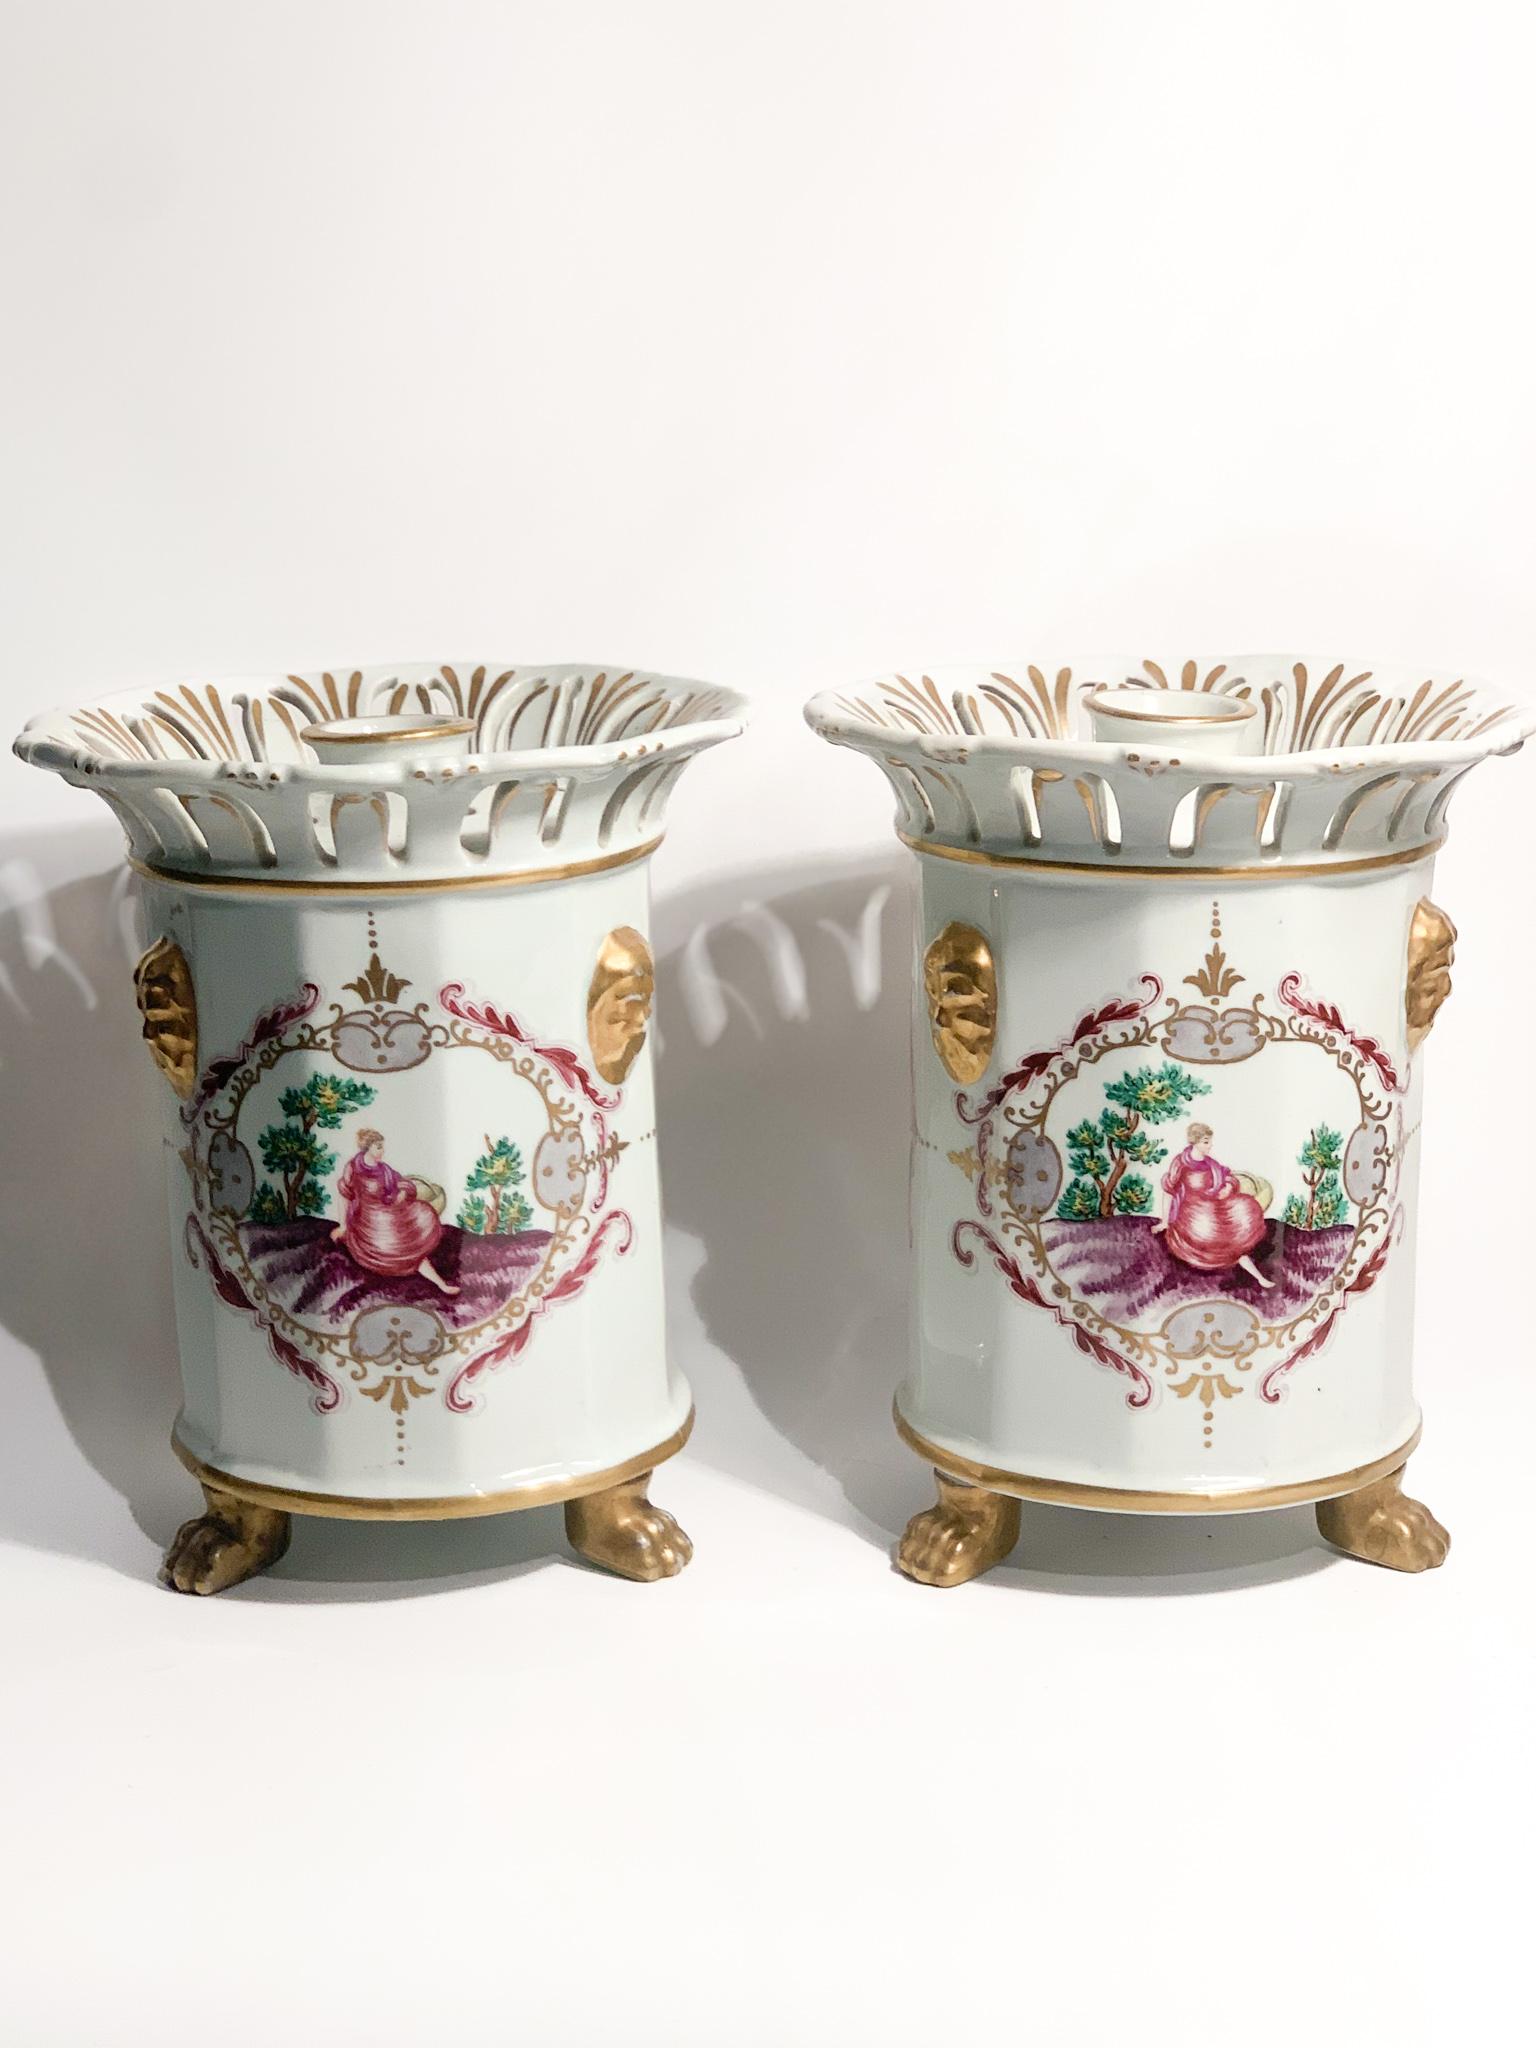 Paar handbemalte französische Porzellanvasen / Parfümhalter, hergestellt in den 1950er Jahren

Ø 18 cm h 22 cm

Ein Stützfuß wurde wiederhergestellt. Weitere Informationen auf Anfrage.